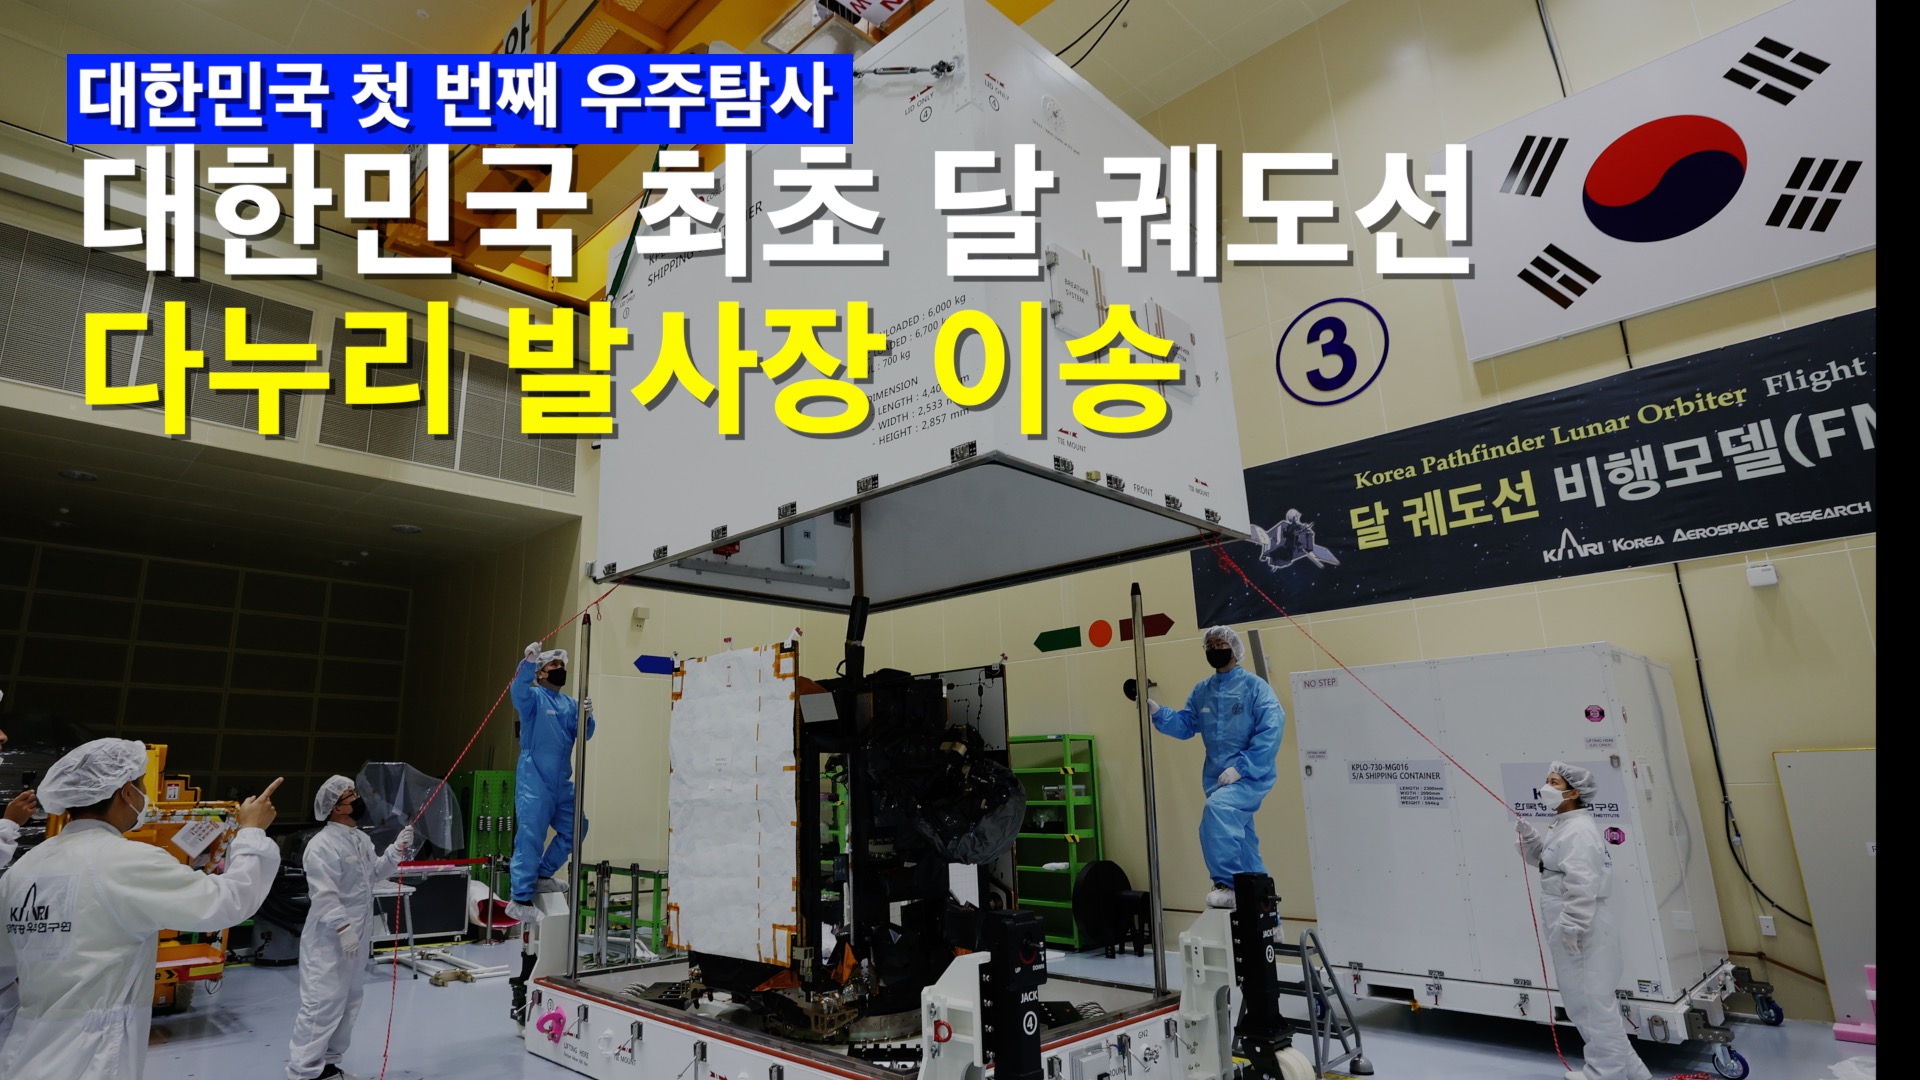 더 먼 우주를 향한 대한민국의 첫 번째 도전, 새창으로 이동